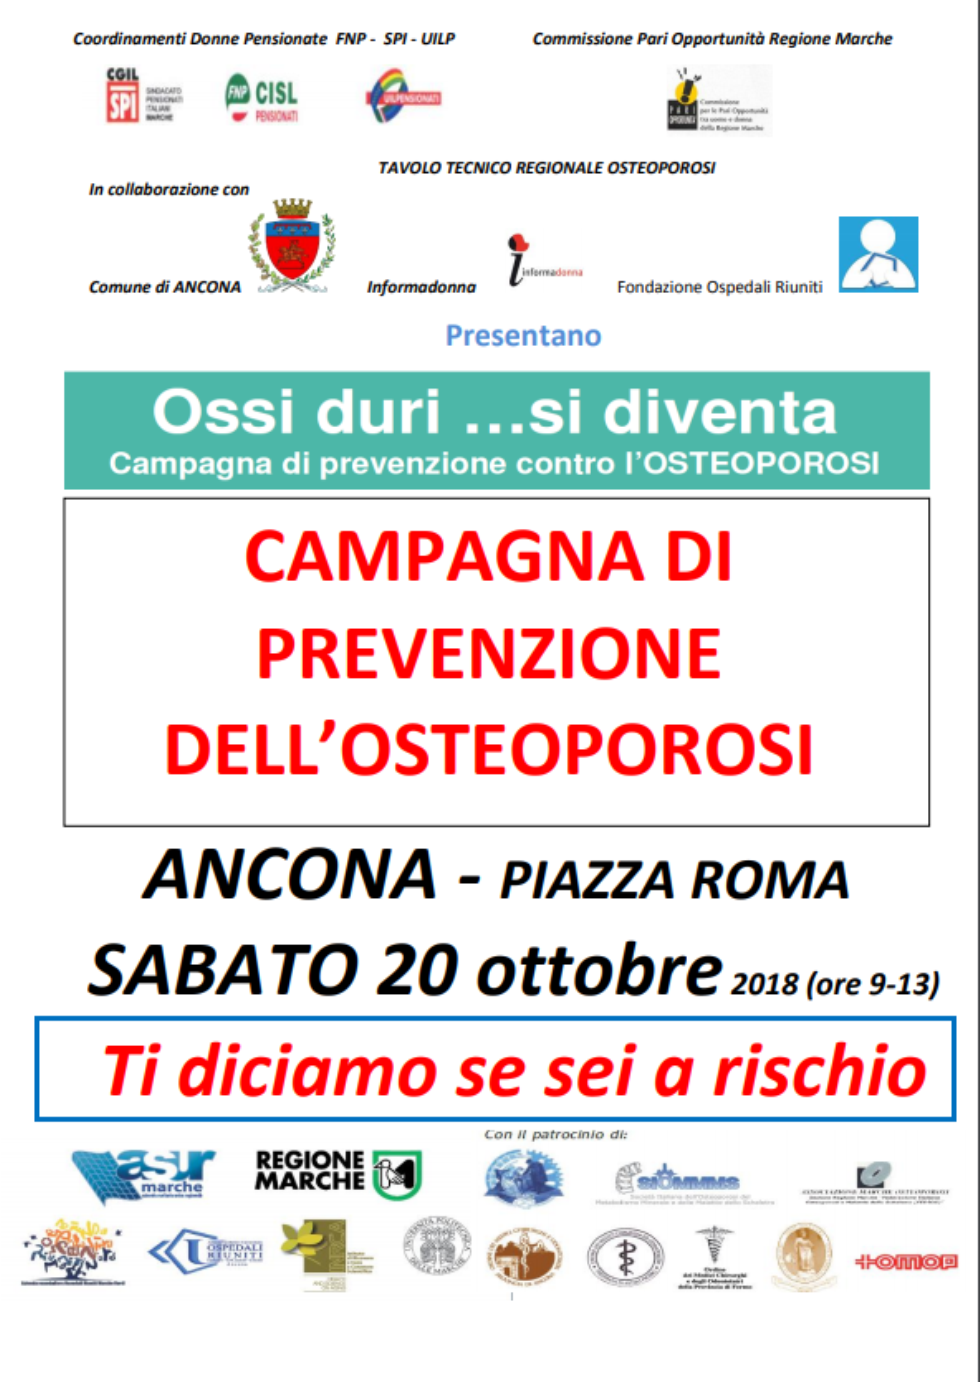 Ossi duri si diventa: campagna di prevenzione dell'osteoporosi ad Ancona